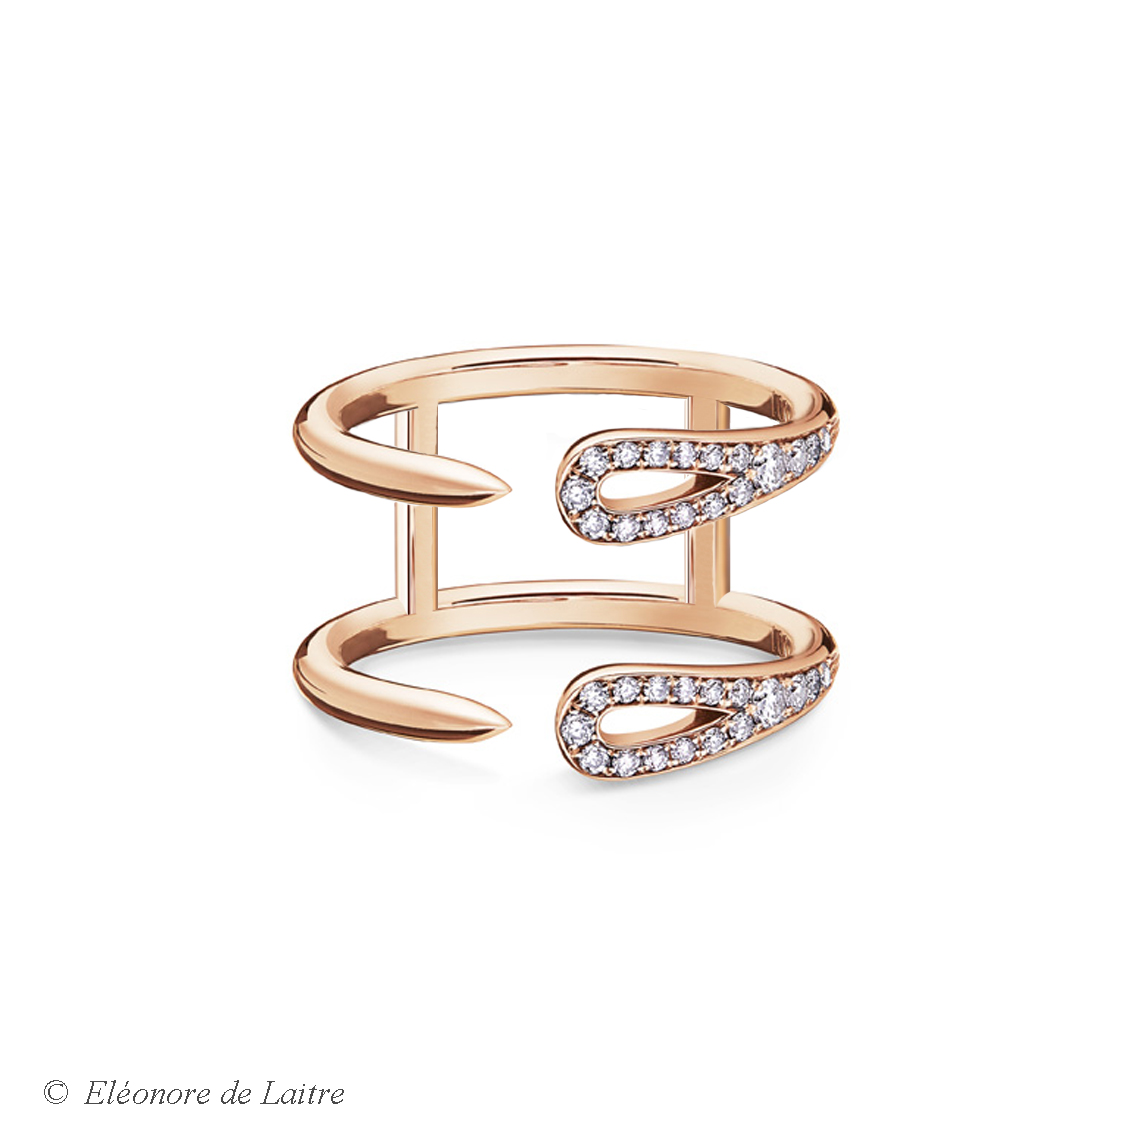 Eléonore de Laitre - Bague Double Aiguille - diamants, or rose - Collection Couture